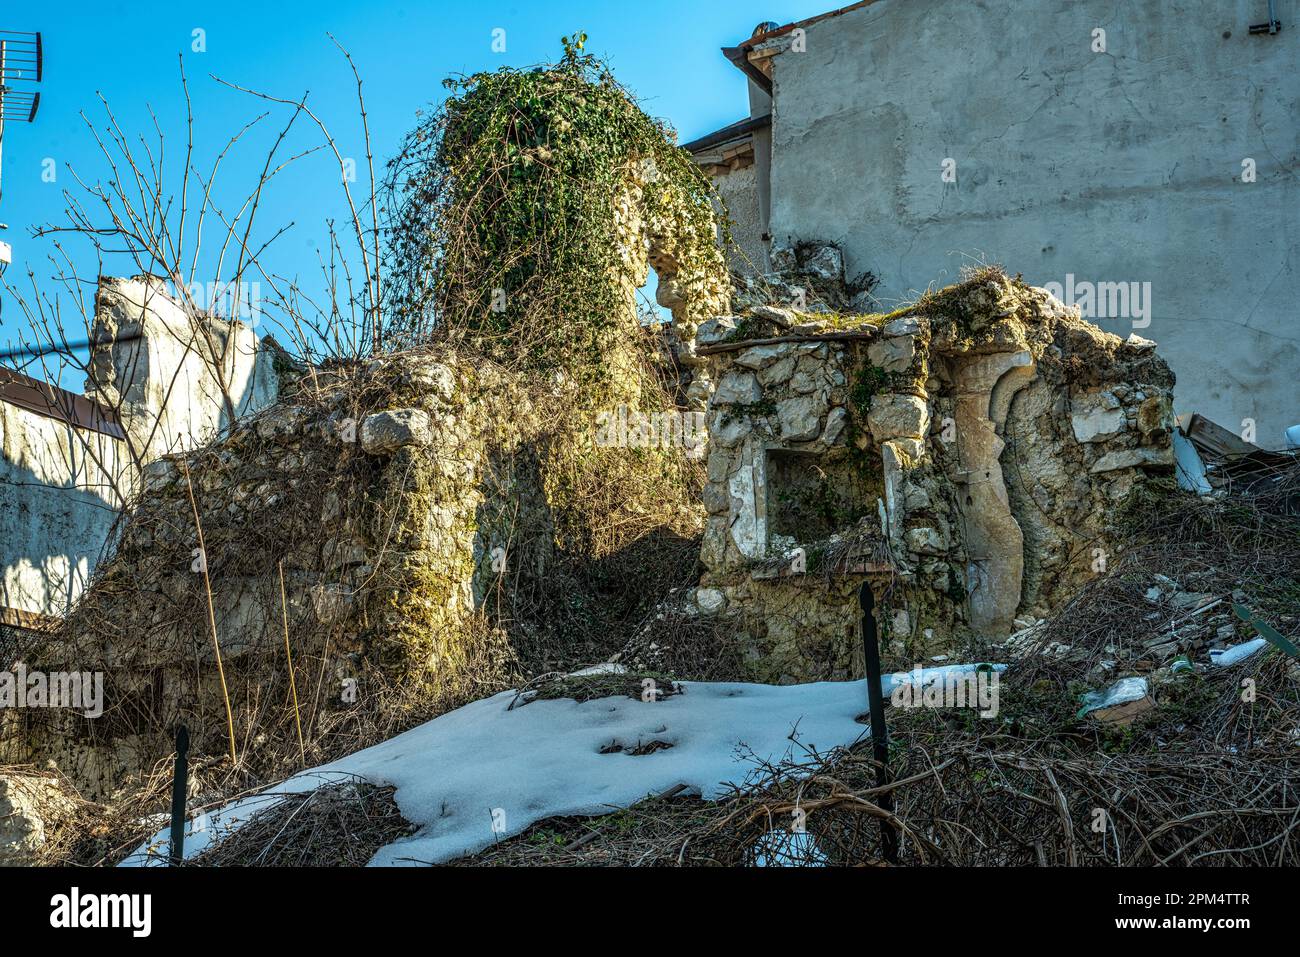 Ruinen eines zusammengebrochenen und zerstörten Hauses, überwuchert mit Reben und Vegetation. San Vittorino, Provincai dell'Aquila, Abruzzen, Italien, Europa Stockfoto